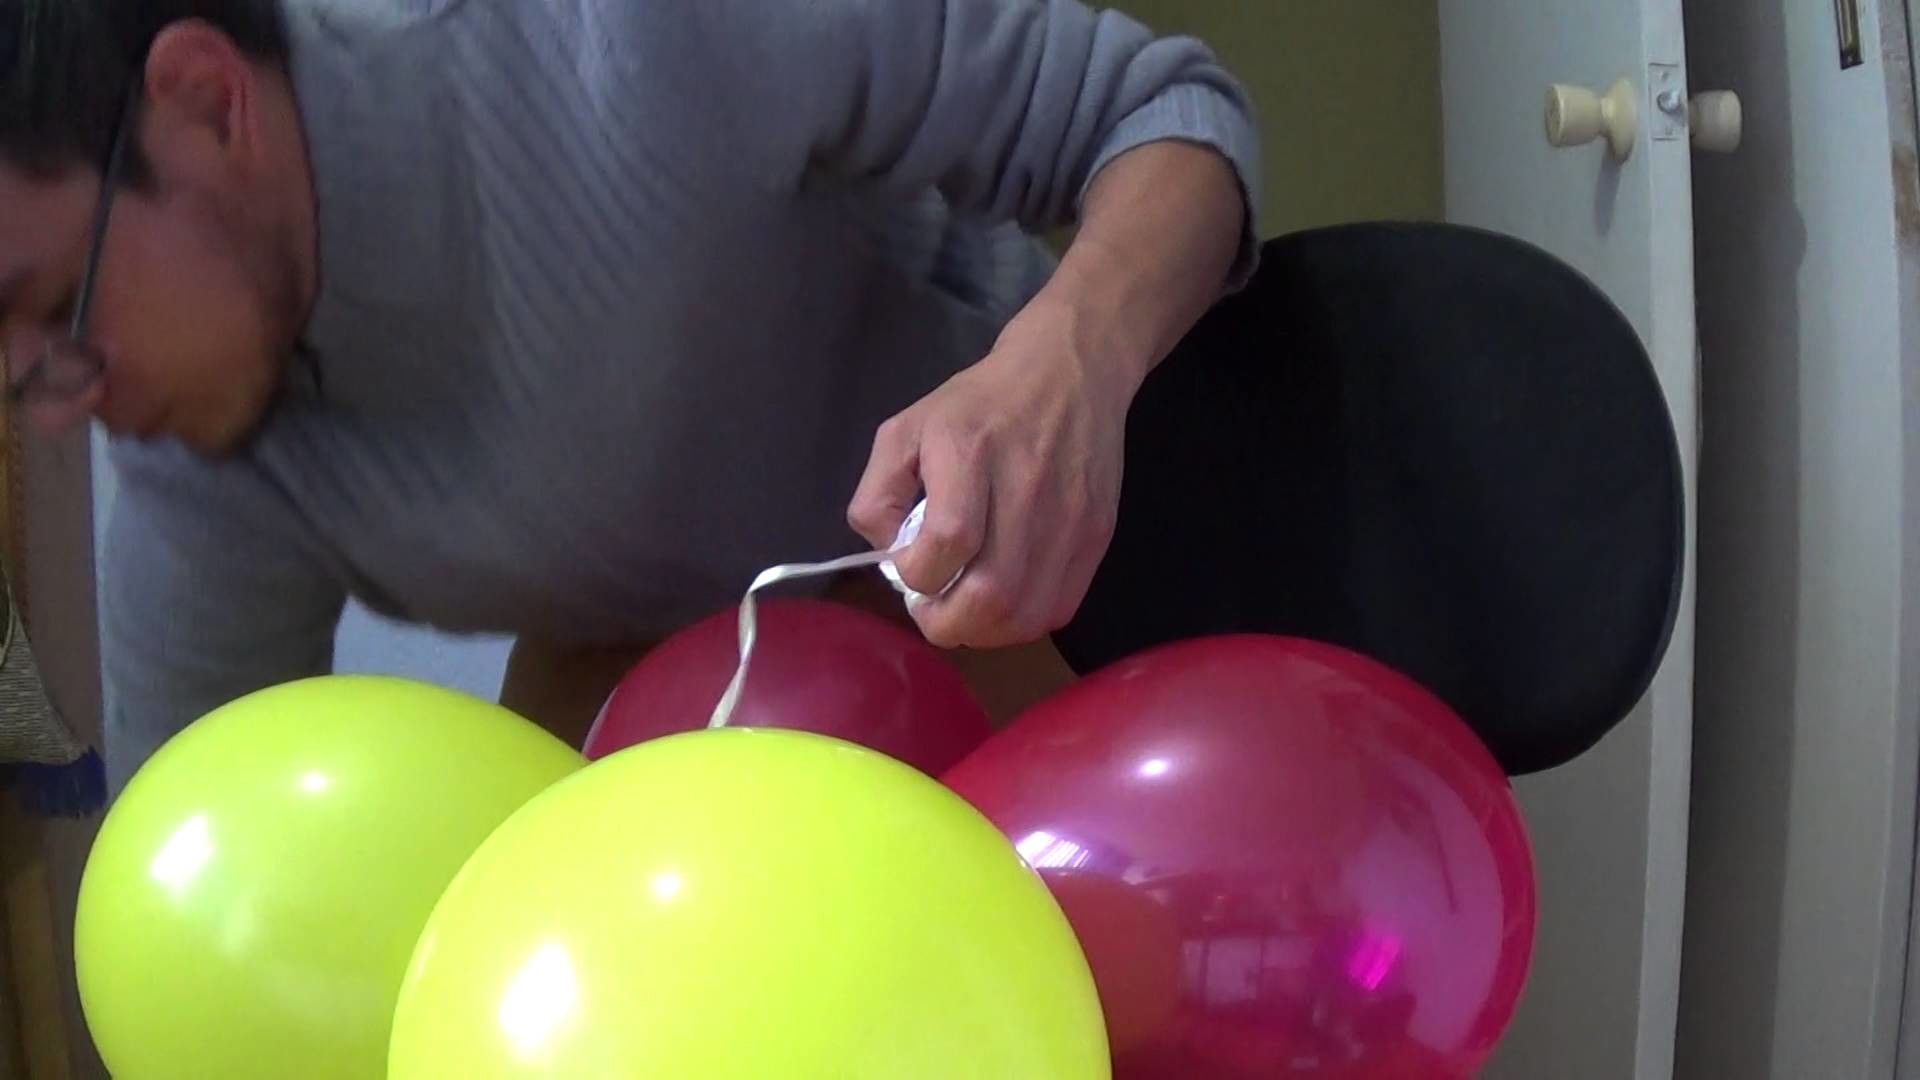 Como hacer columna de globos sin base